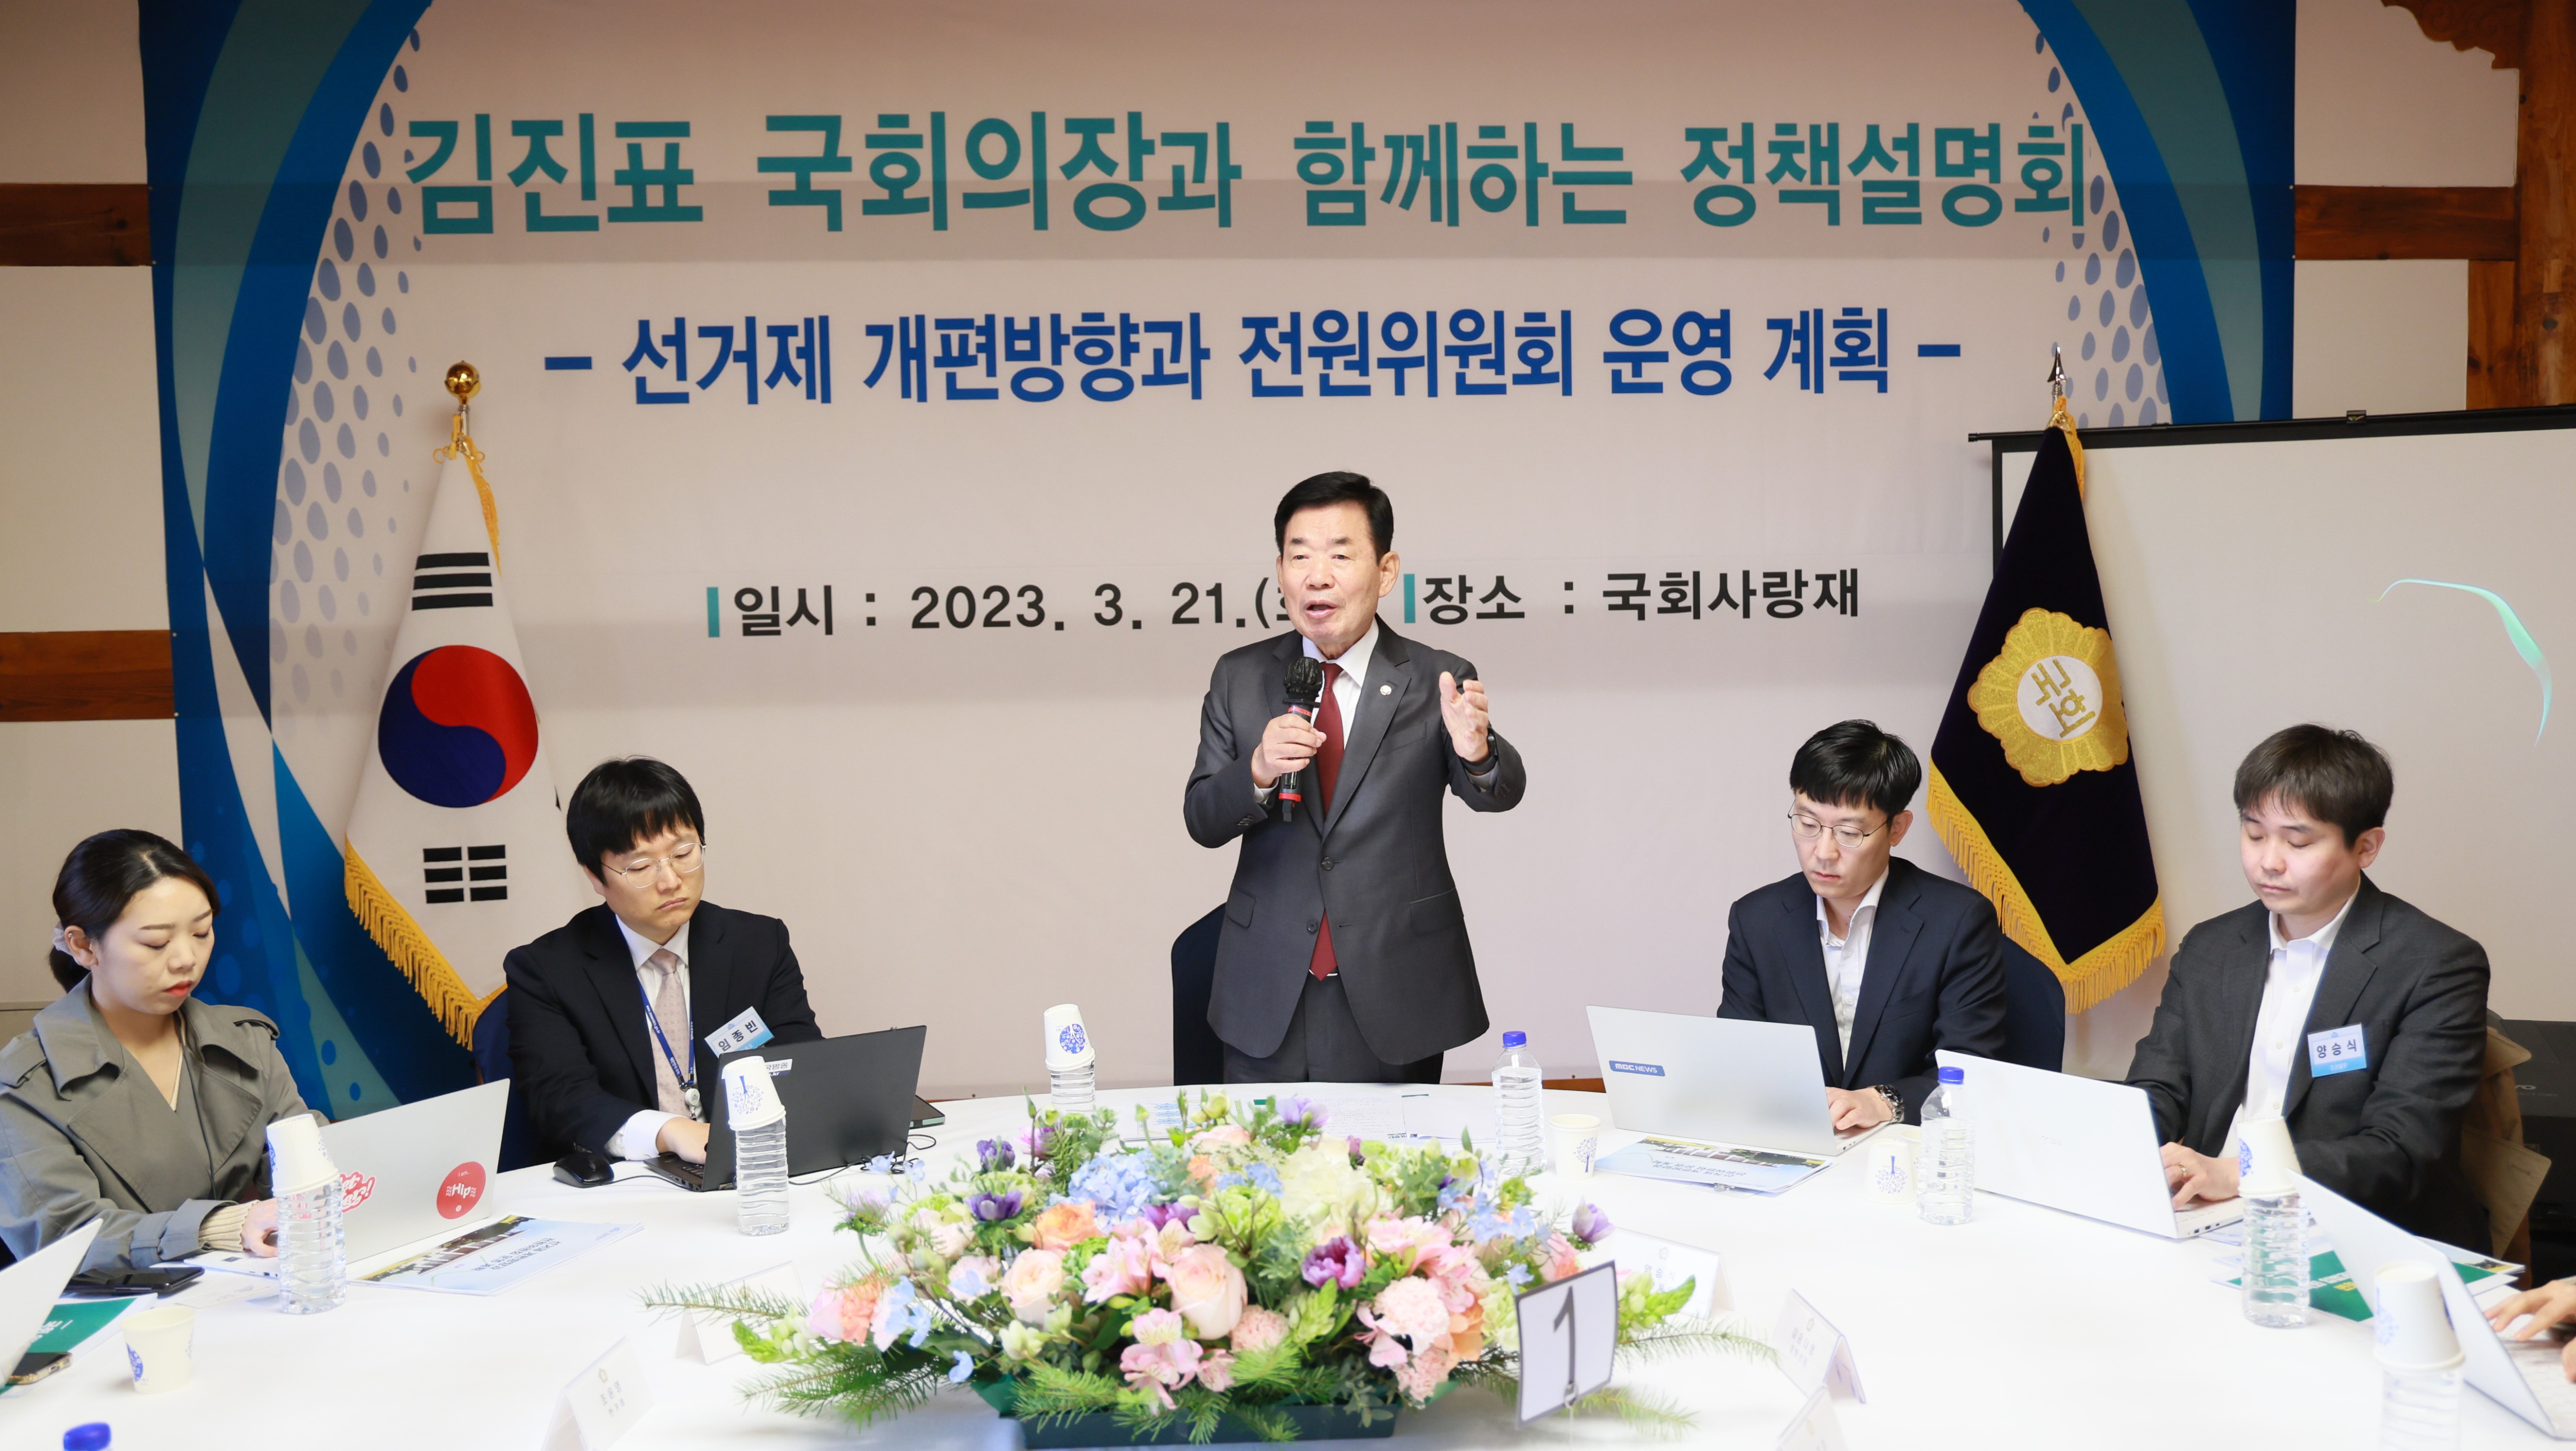 김진표 의장, 선거제 개편안·전원위원회 운영계획 정책설명회 개최 관련사진 1 보기